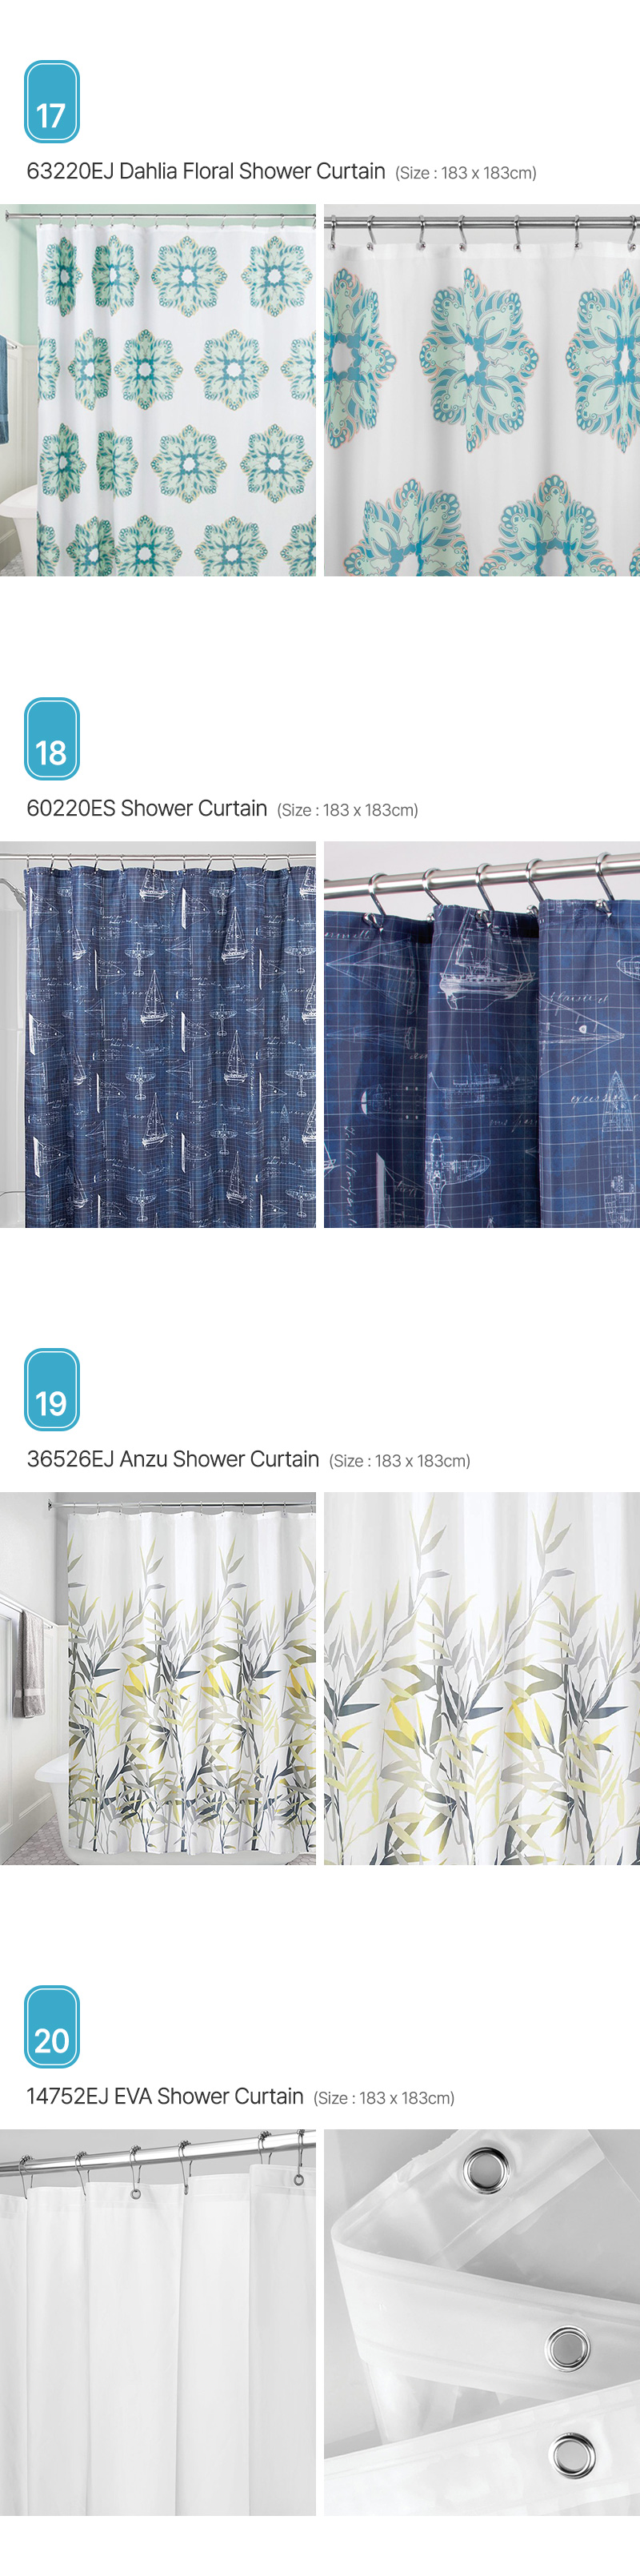 Aria_Shower-Curtain_05.jpg